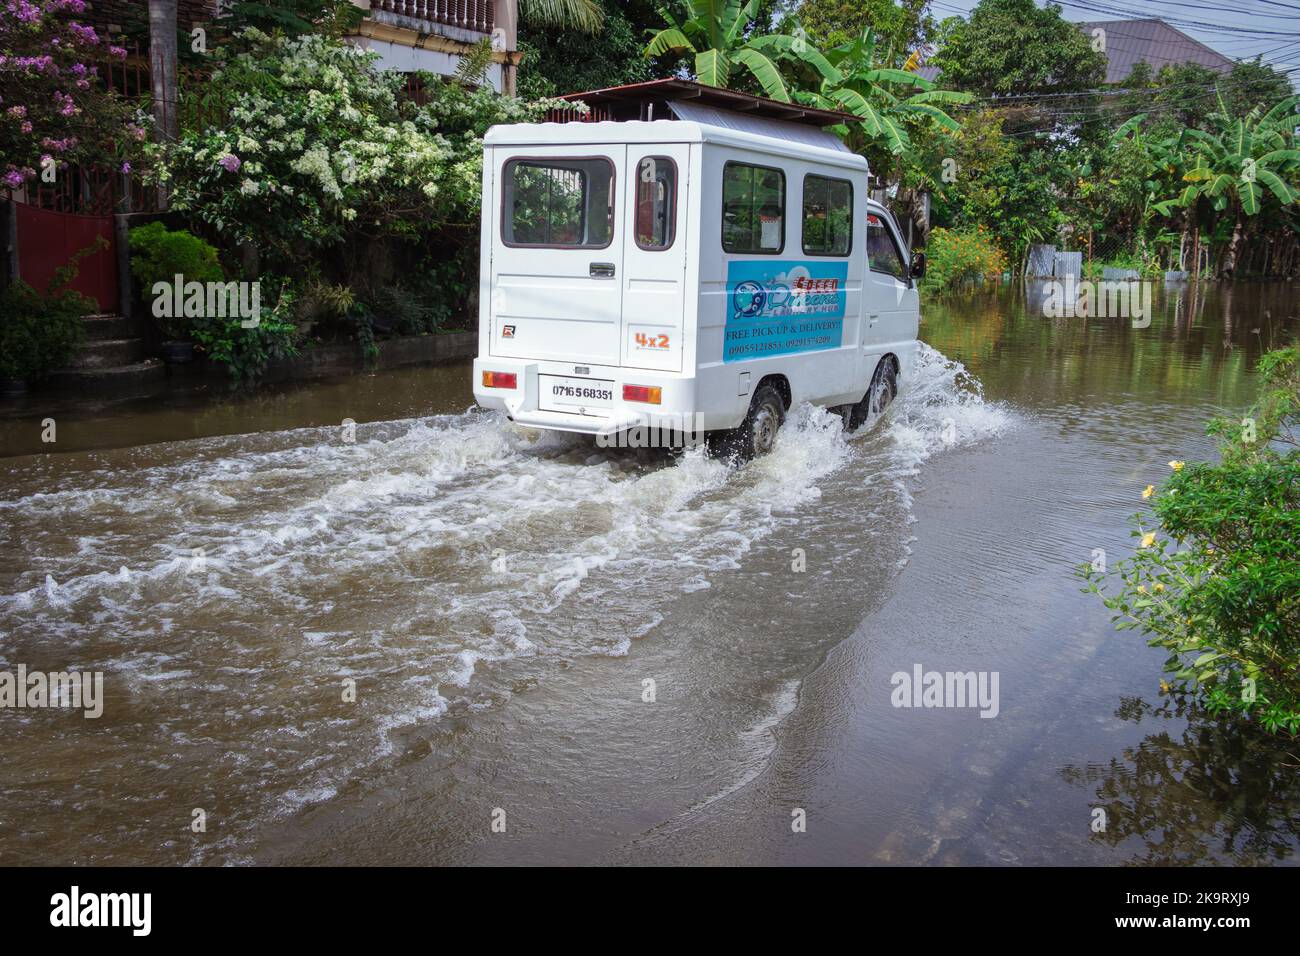 La tempête tropicale grave Paeng ou Nalgae a apporté des inondations et des pluies torrentielles au pays. Fourgonnette roulant sur une route inondée. Opération de décharge. Banque D'Images